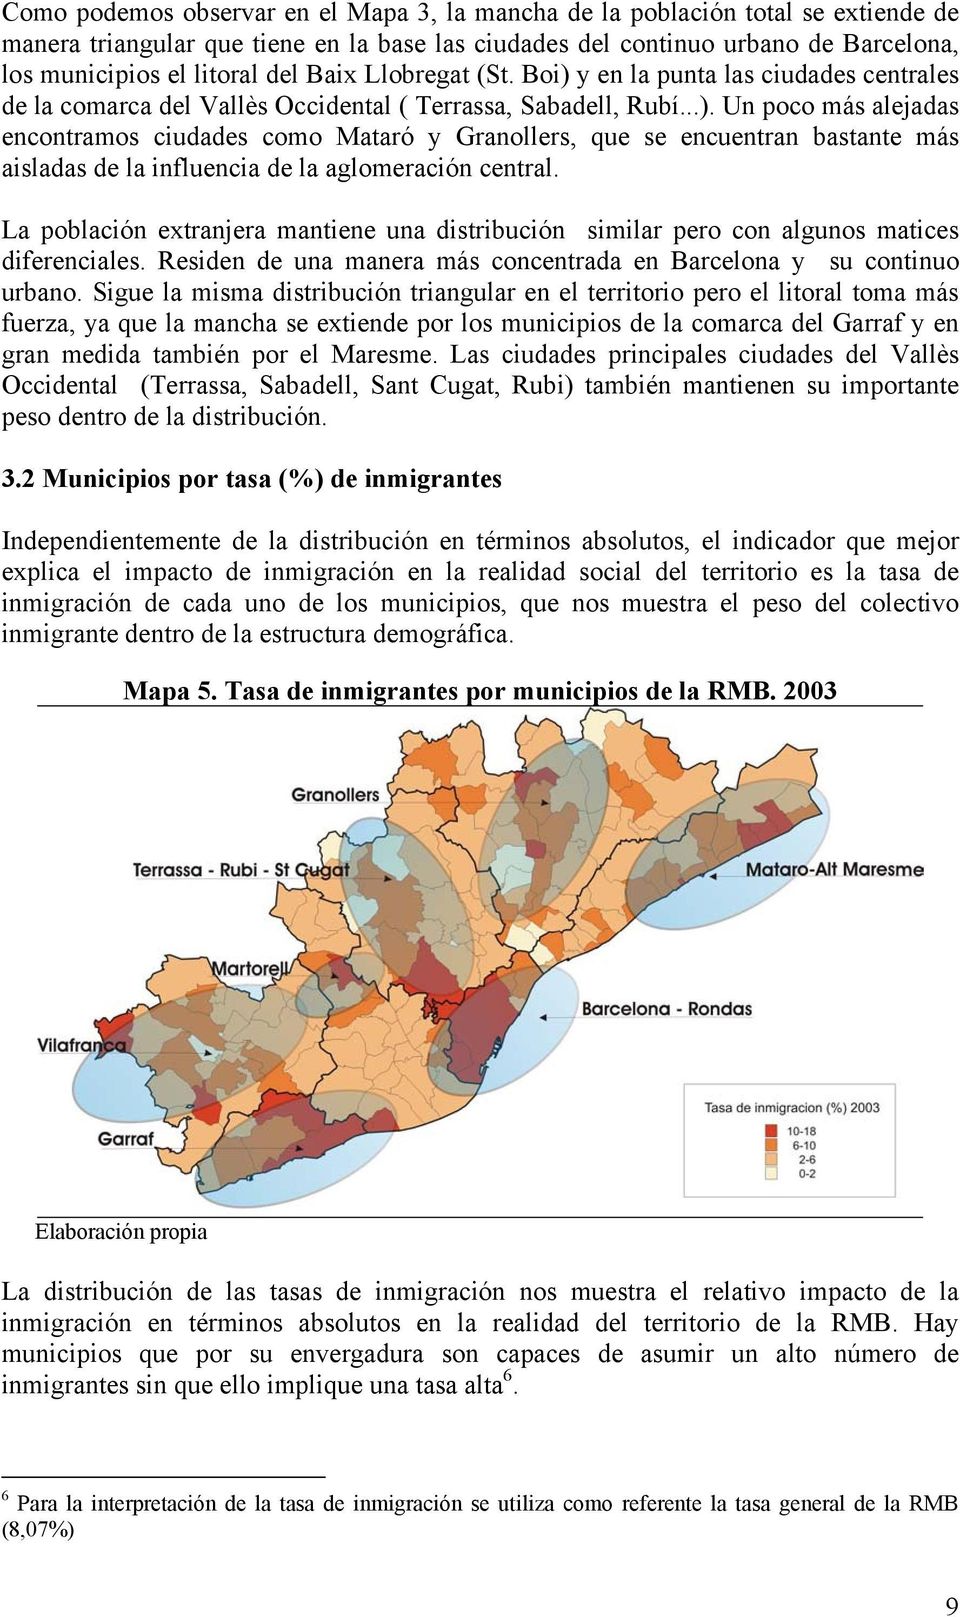 La población extranjera mantiene una distribución similar pero con algunos matices diferenciales. Residen de una manera más concentrada en Barcelona y su continuo urbano.